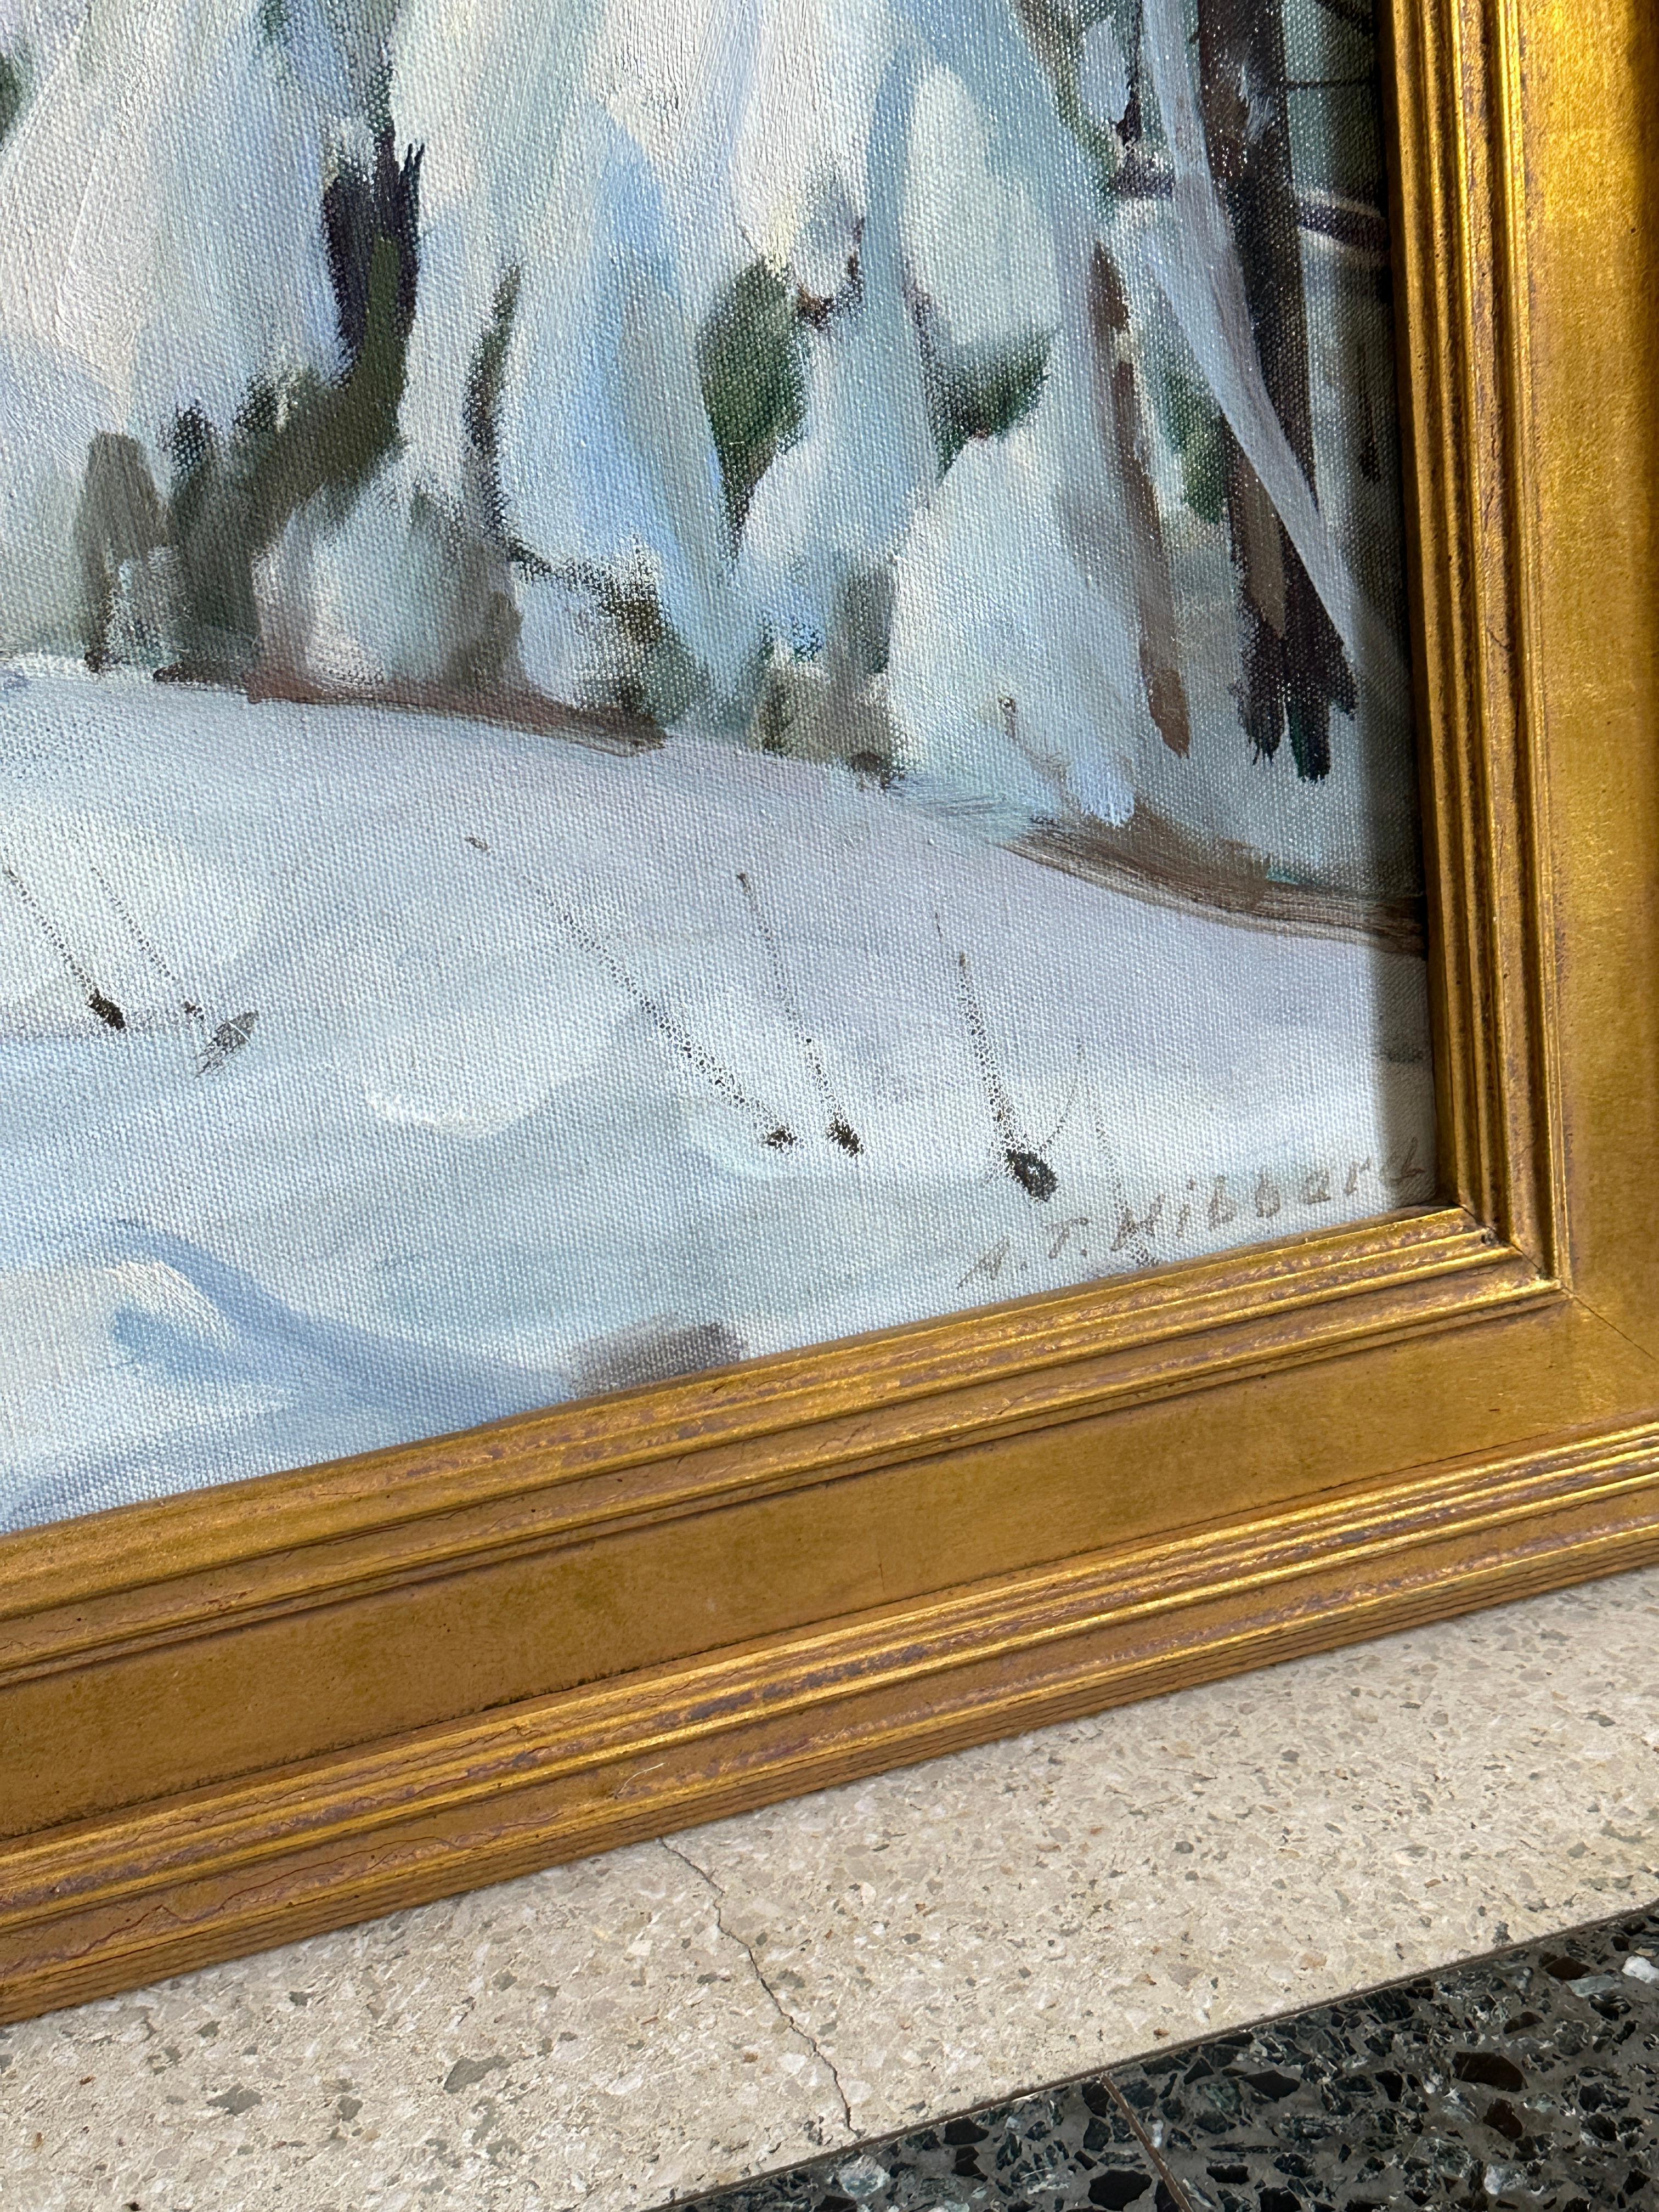 Aldro T. Hibbard (Amerikaner, 1886-1972)
A. Winter Wonderland
Signiert unten rechts
26 x 36 Zoll
32 x 42 Zoll mit Rahmen

Der in Falmouth, Massachusetts, geborene Aldro Hibbard war ein impressionistischer Landschaftsmaler, der sich intensiv mit